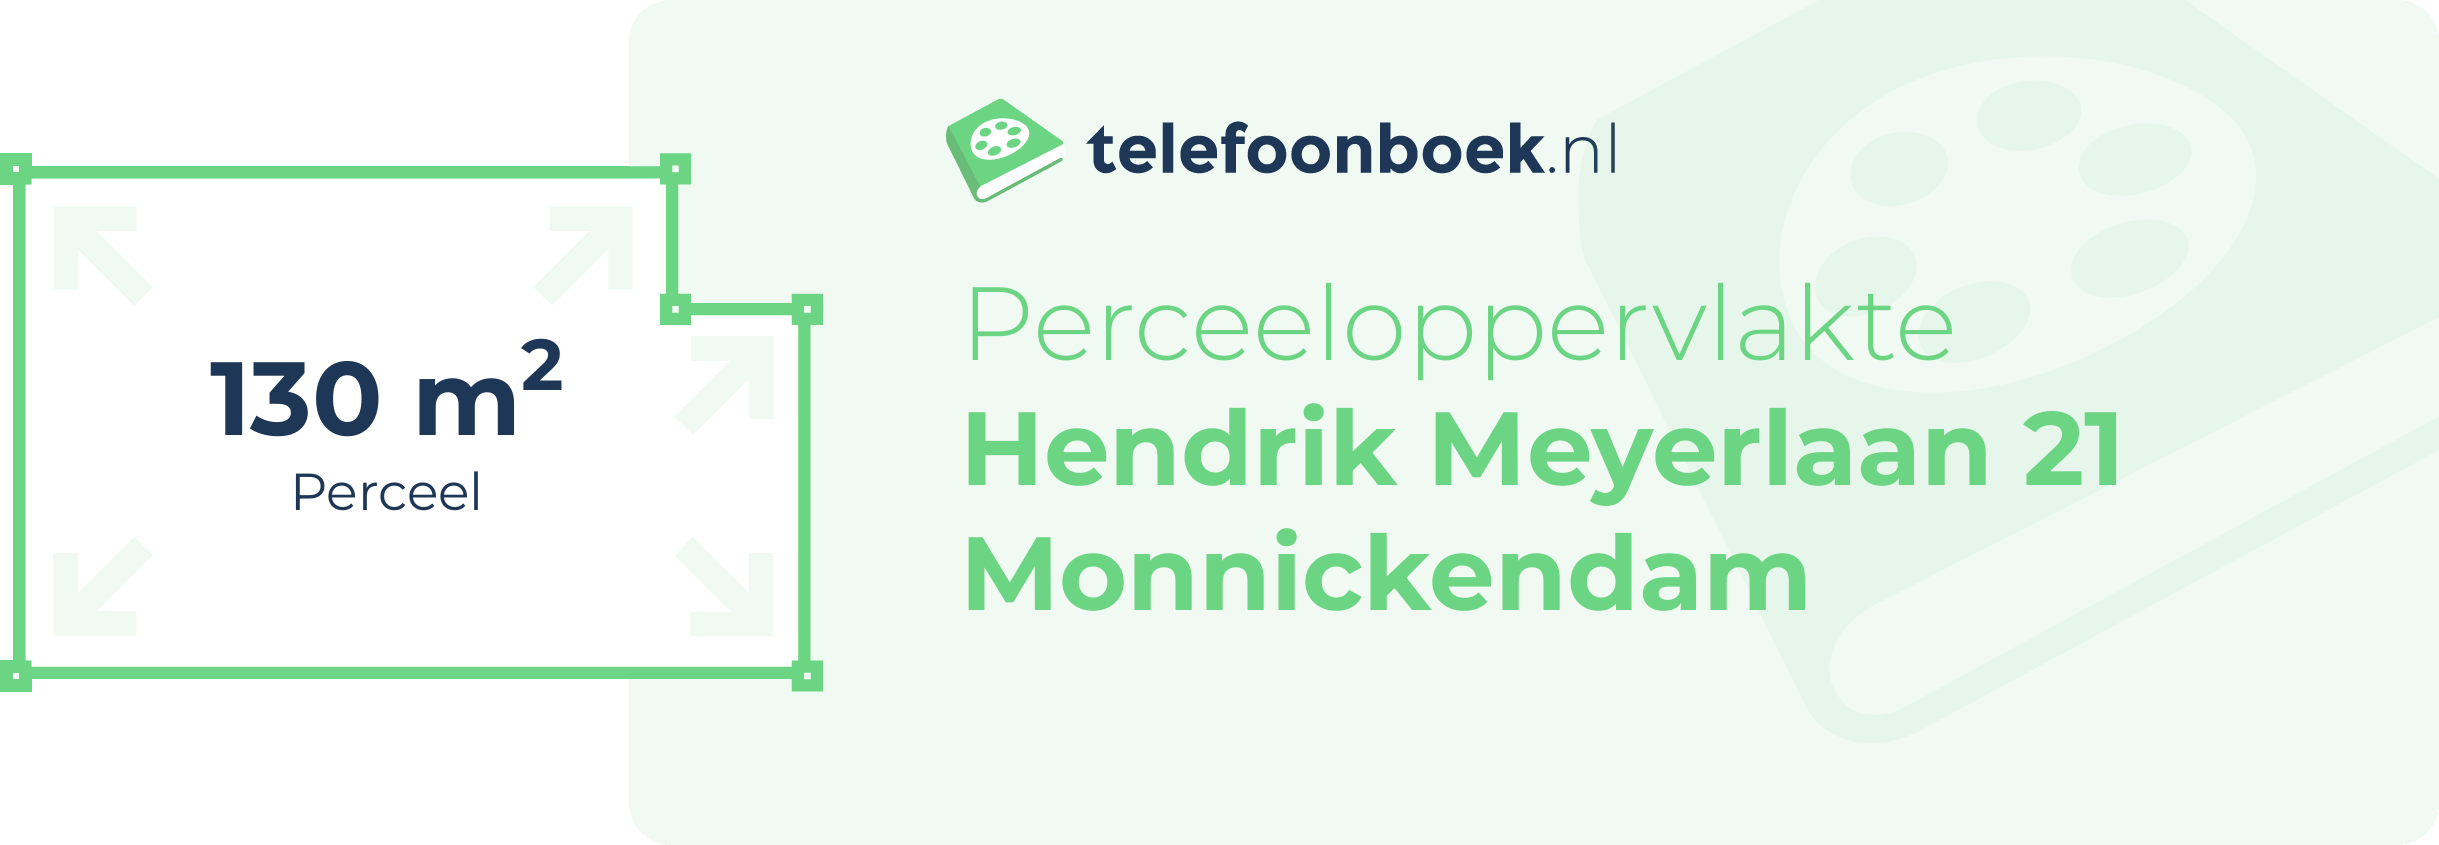 Perceeloppervlakte Hendrik Meyerlaan 21 Monnickendam